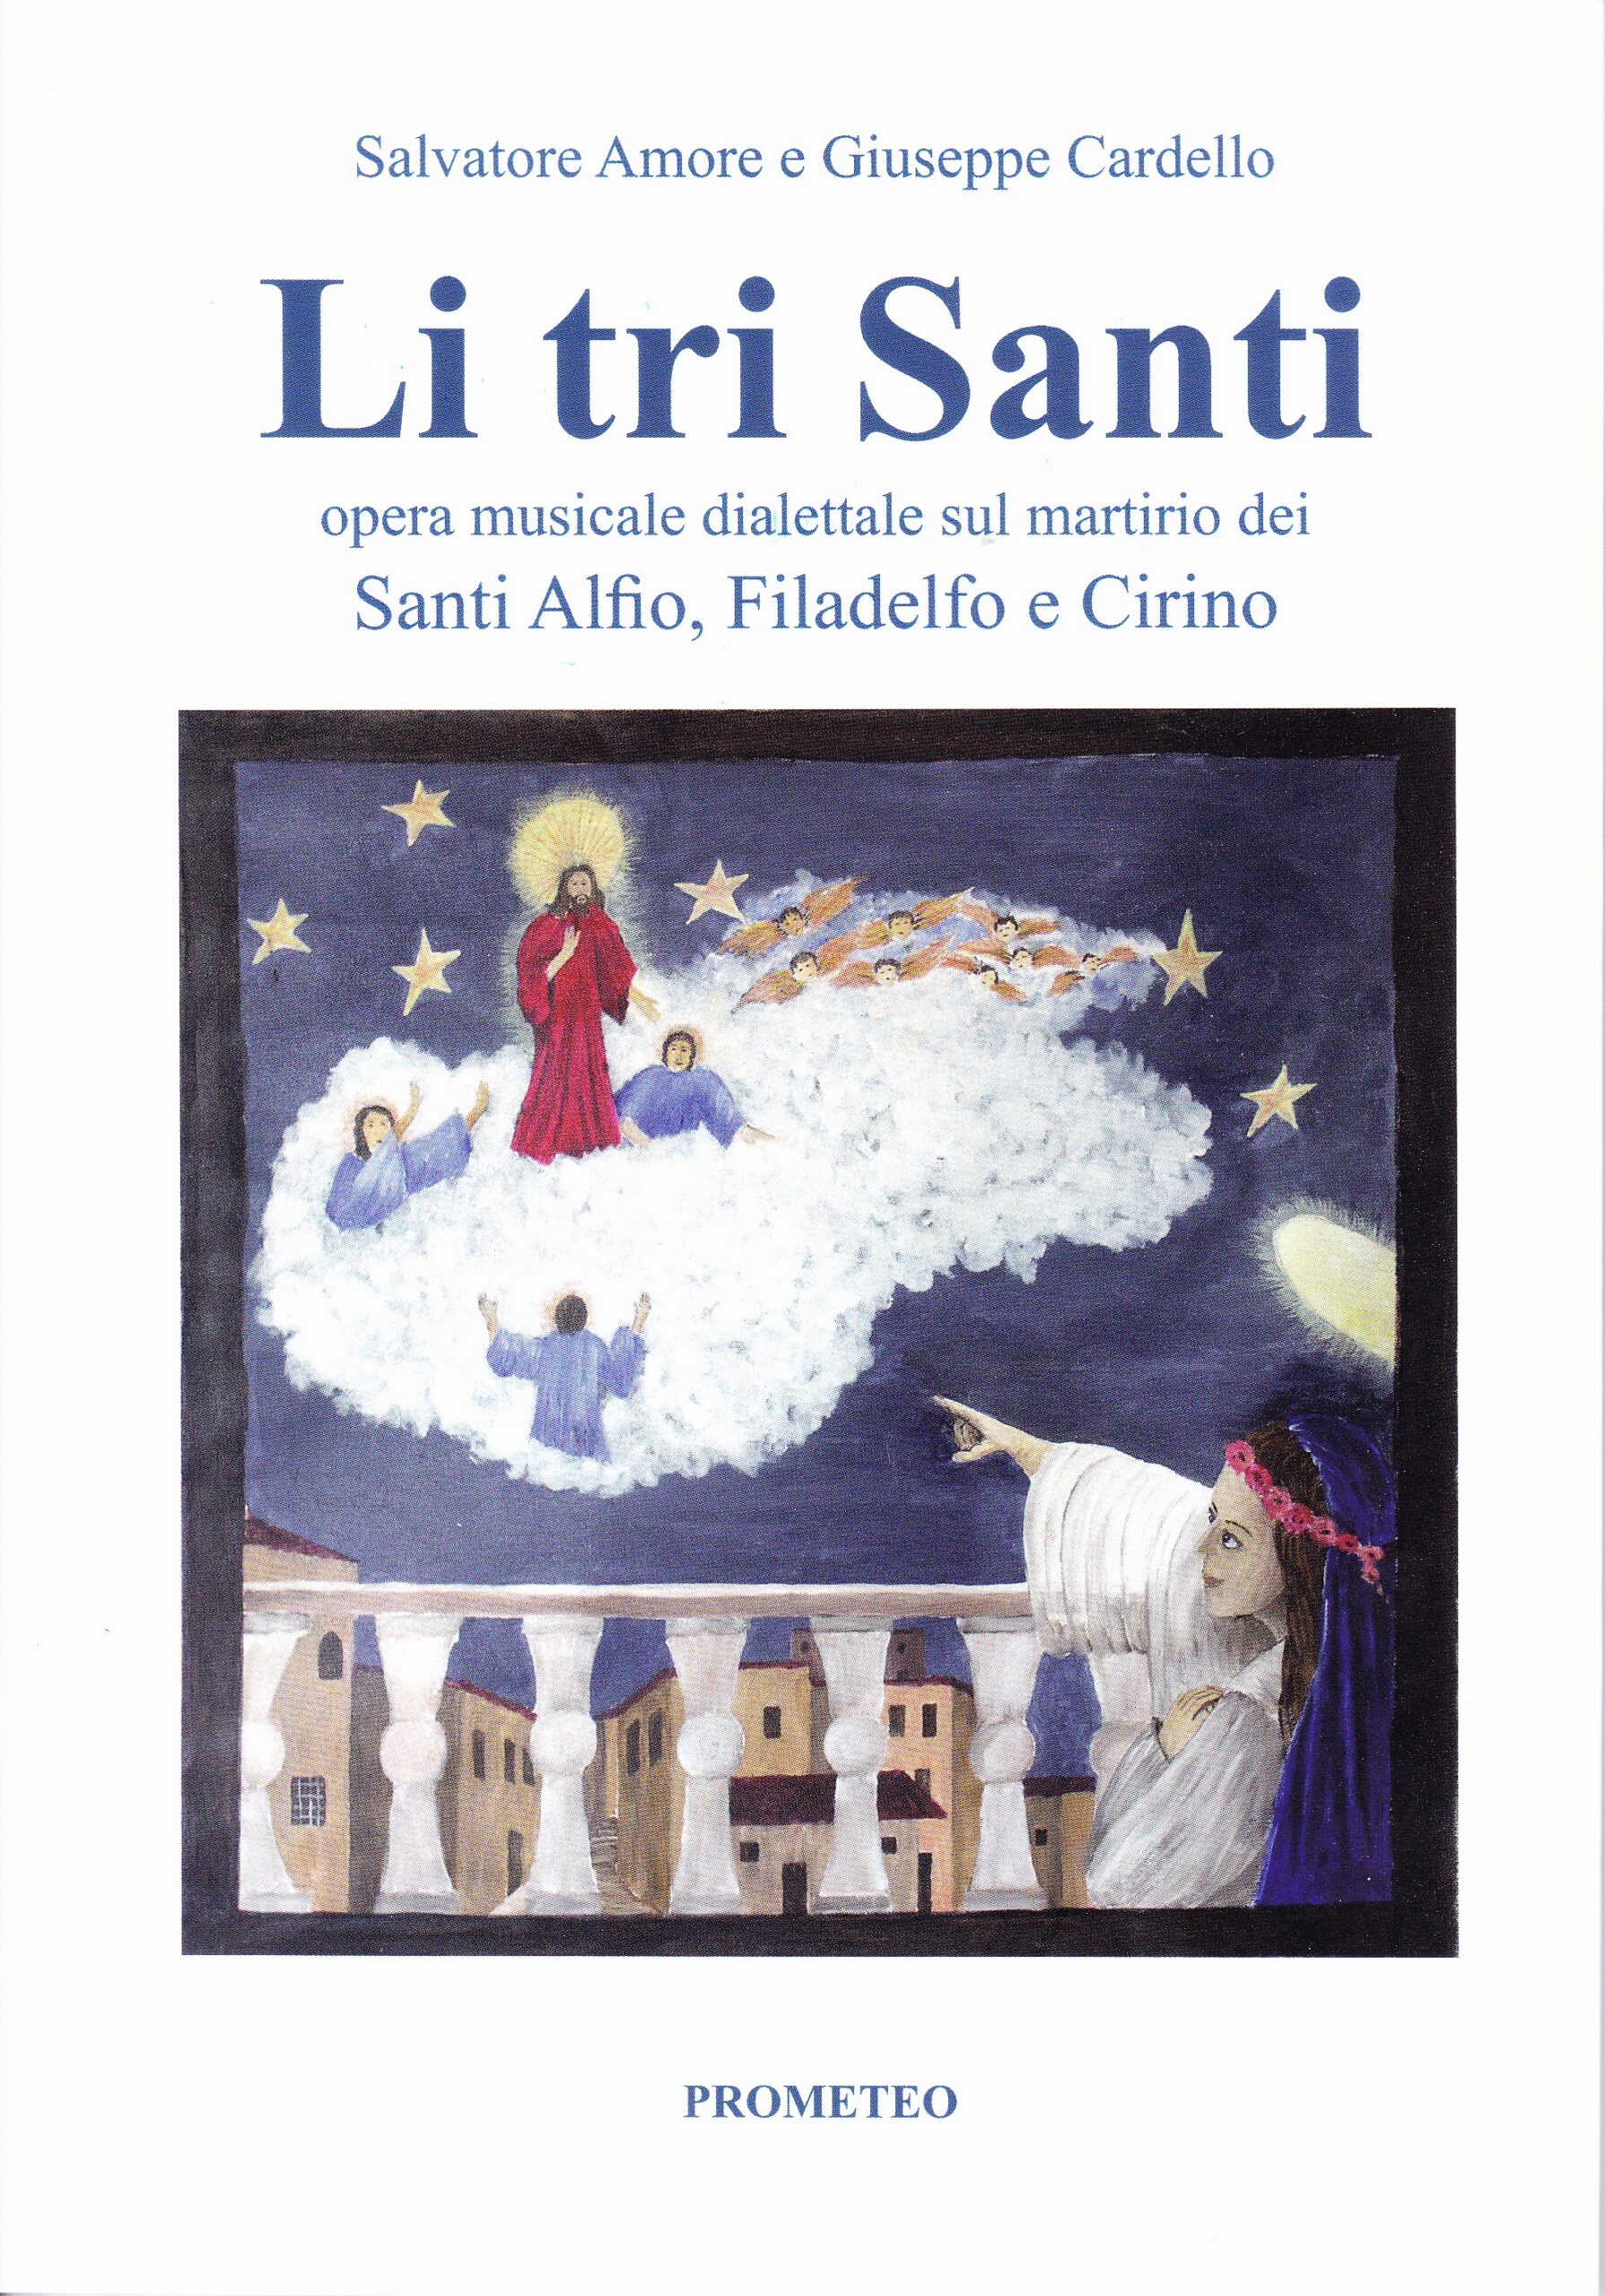 Lentini, Salvatore Amore e Giuseppe Cardello “Li Tri Santi”, il canto in onore dei Santi Martiri